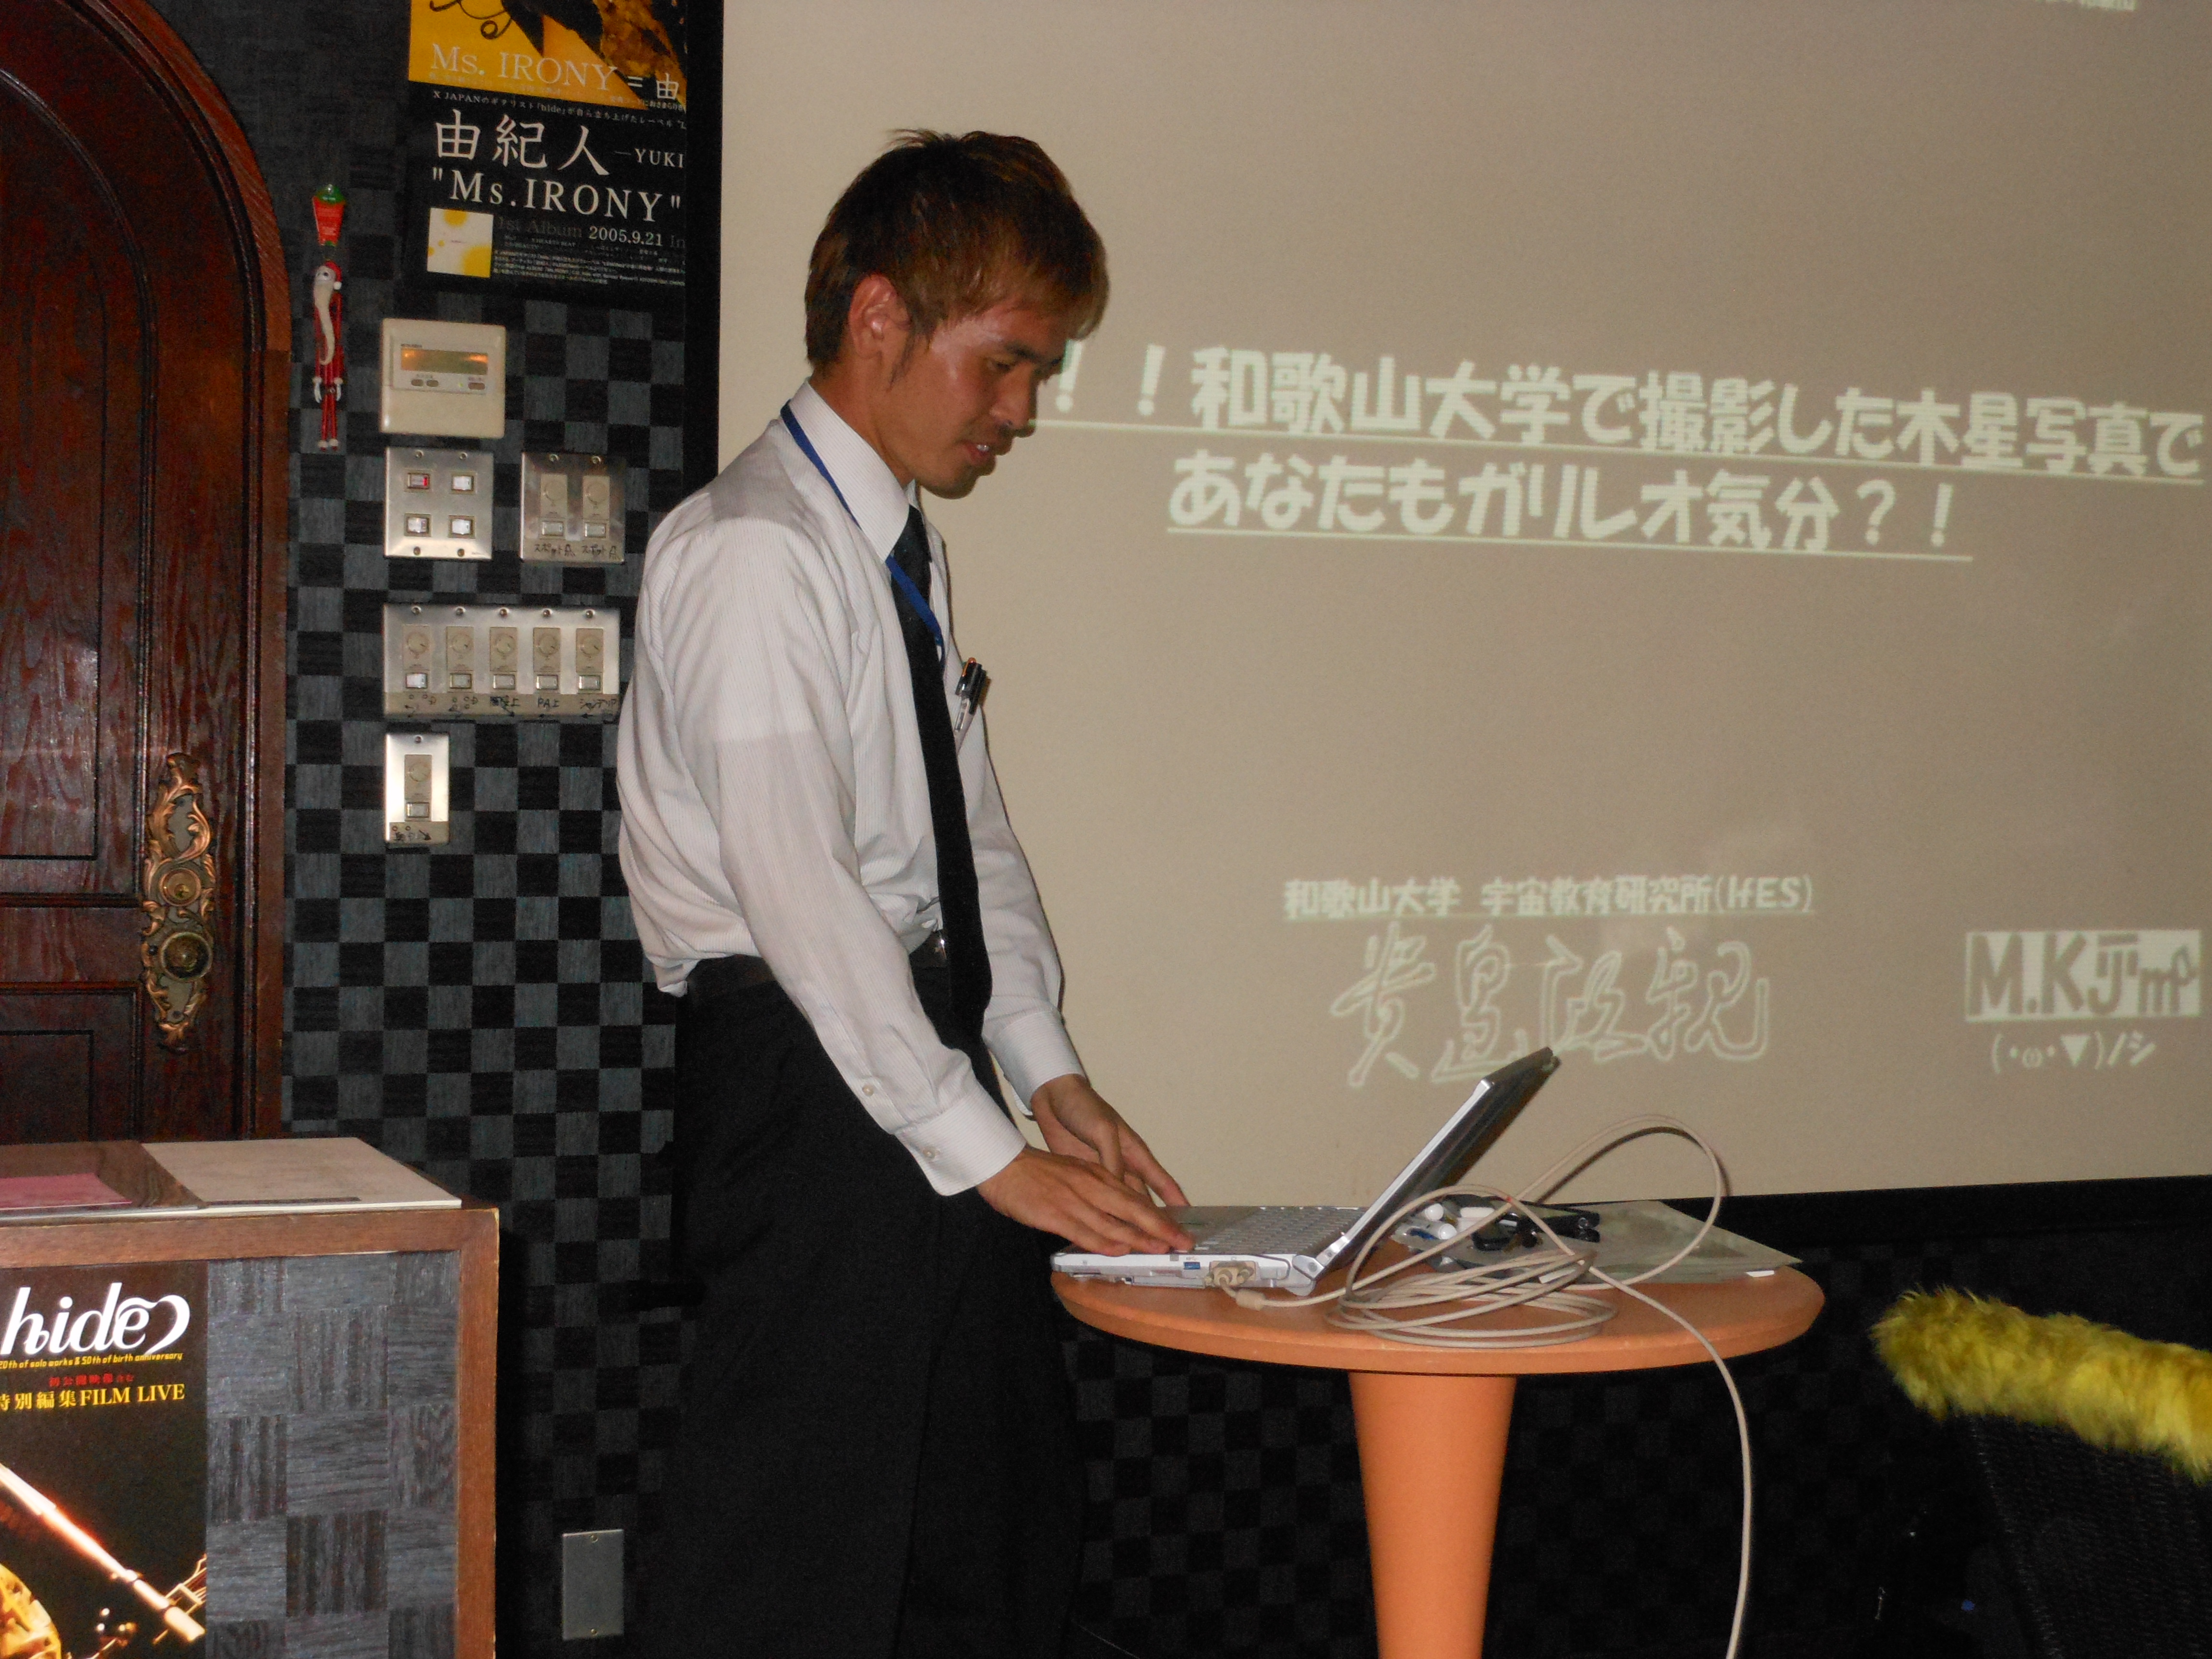 パソコンを操作する貴島先生